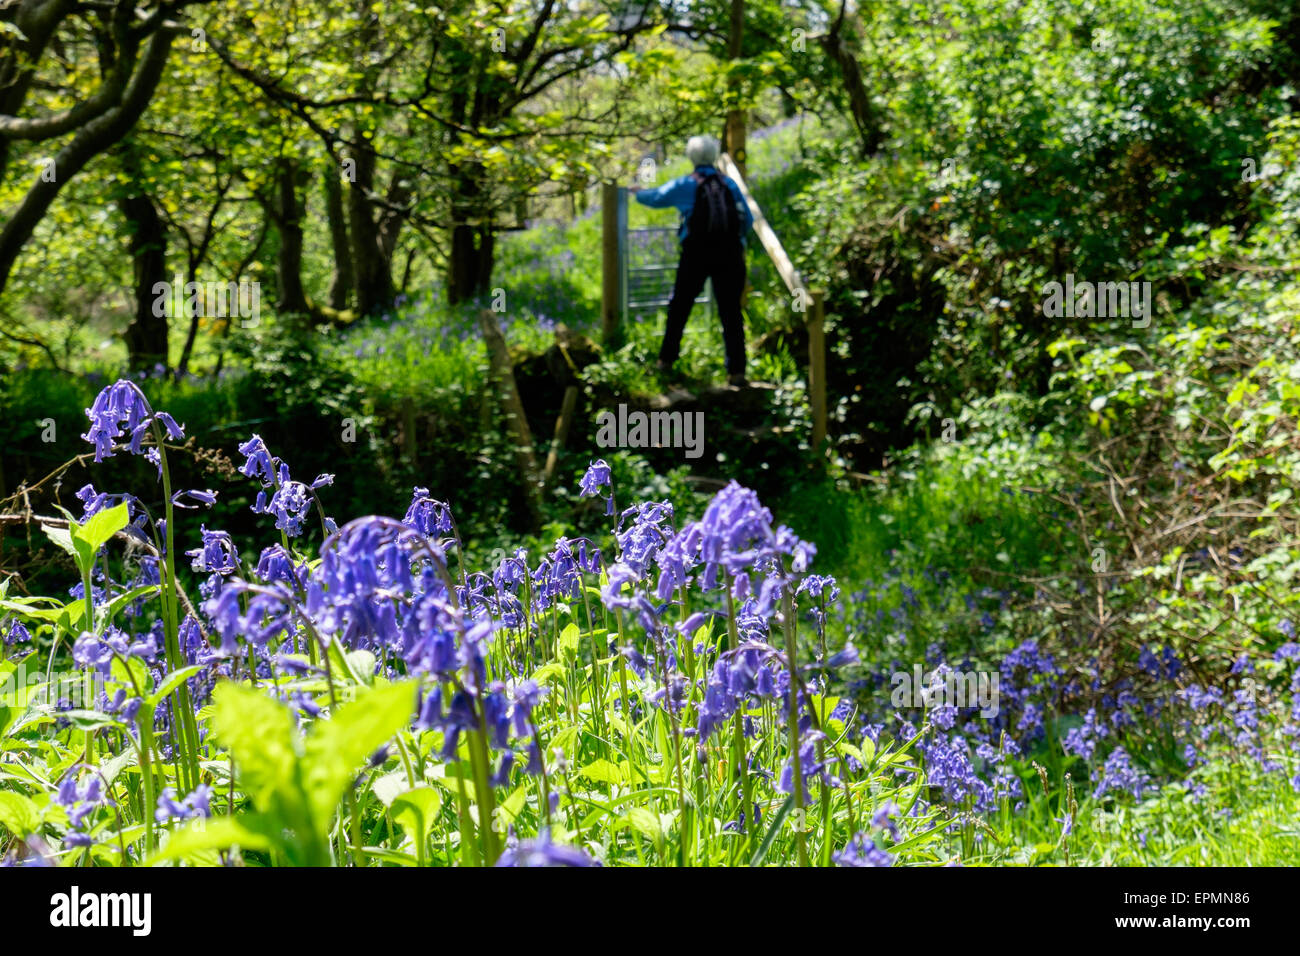 Sentier de pays par Bluebells avec personne marchant à une porte en bois Bluebell rural au printemps. Rhydwyn Isle of Anglesey au nord du Pays de Galles Royaume-uni Grande-Bretagne Banque D'Images